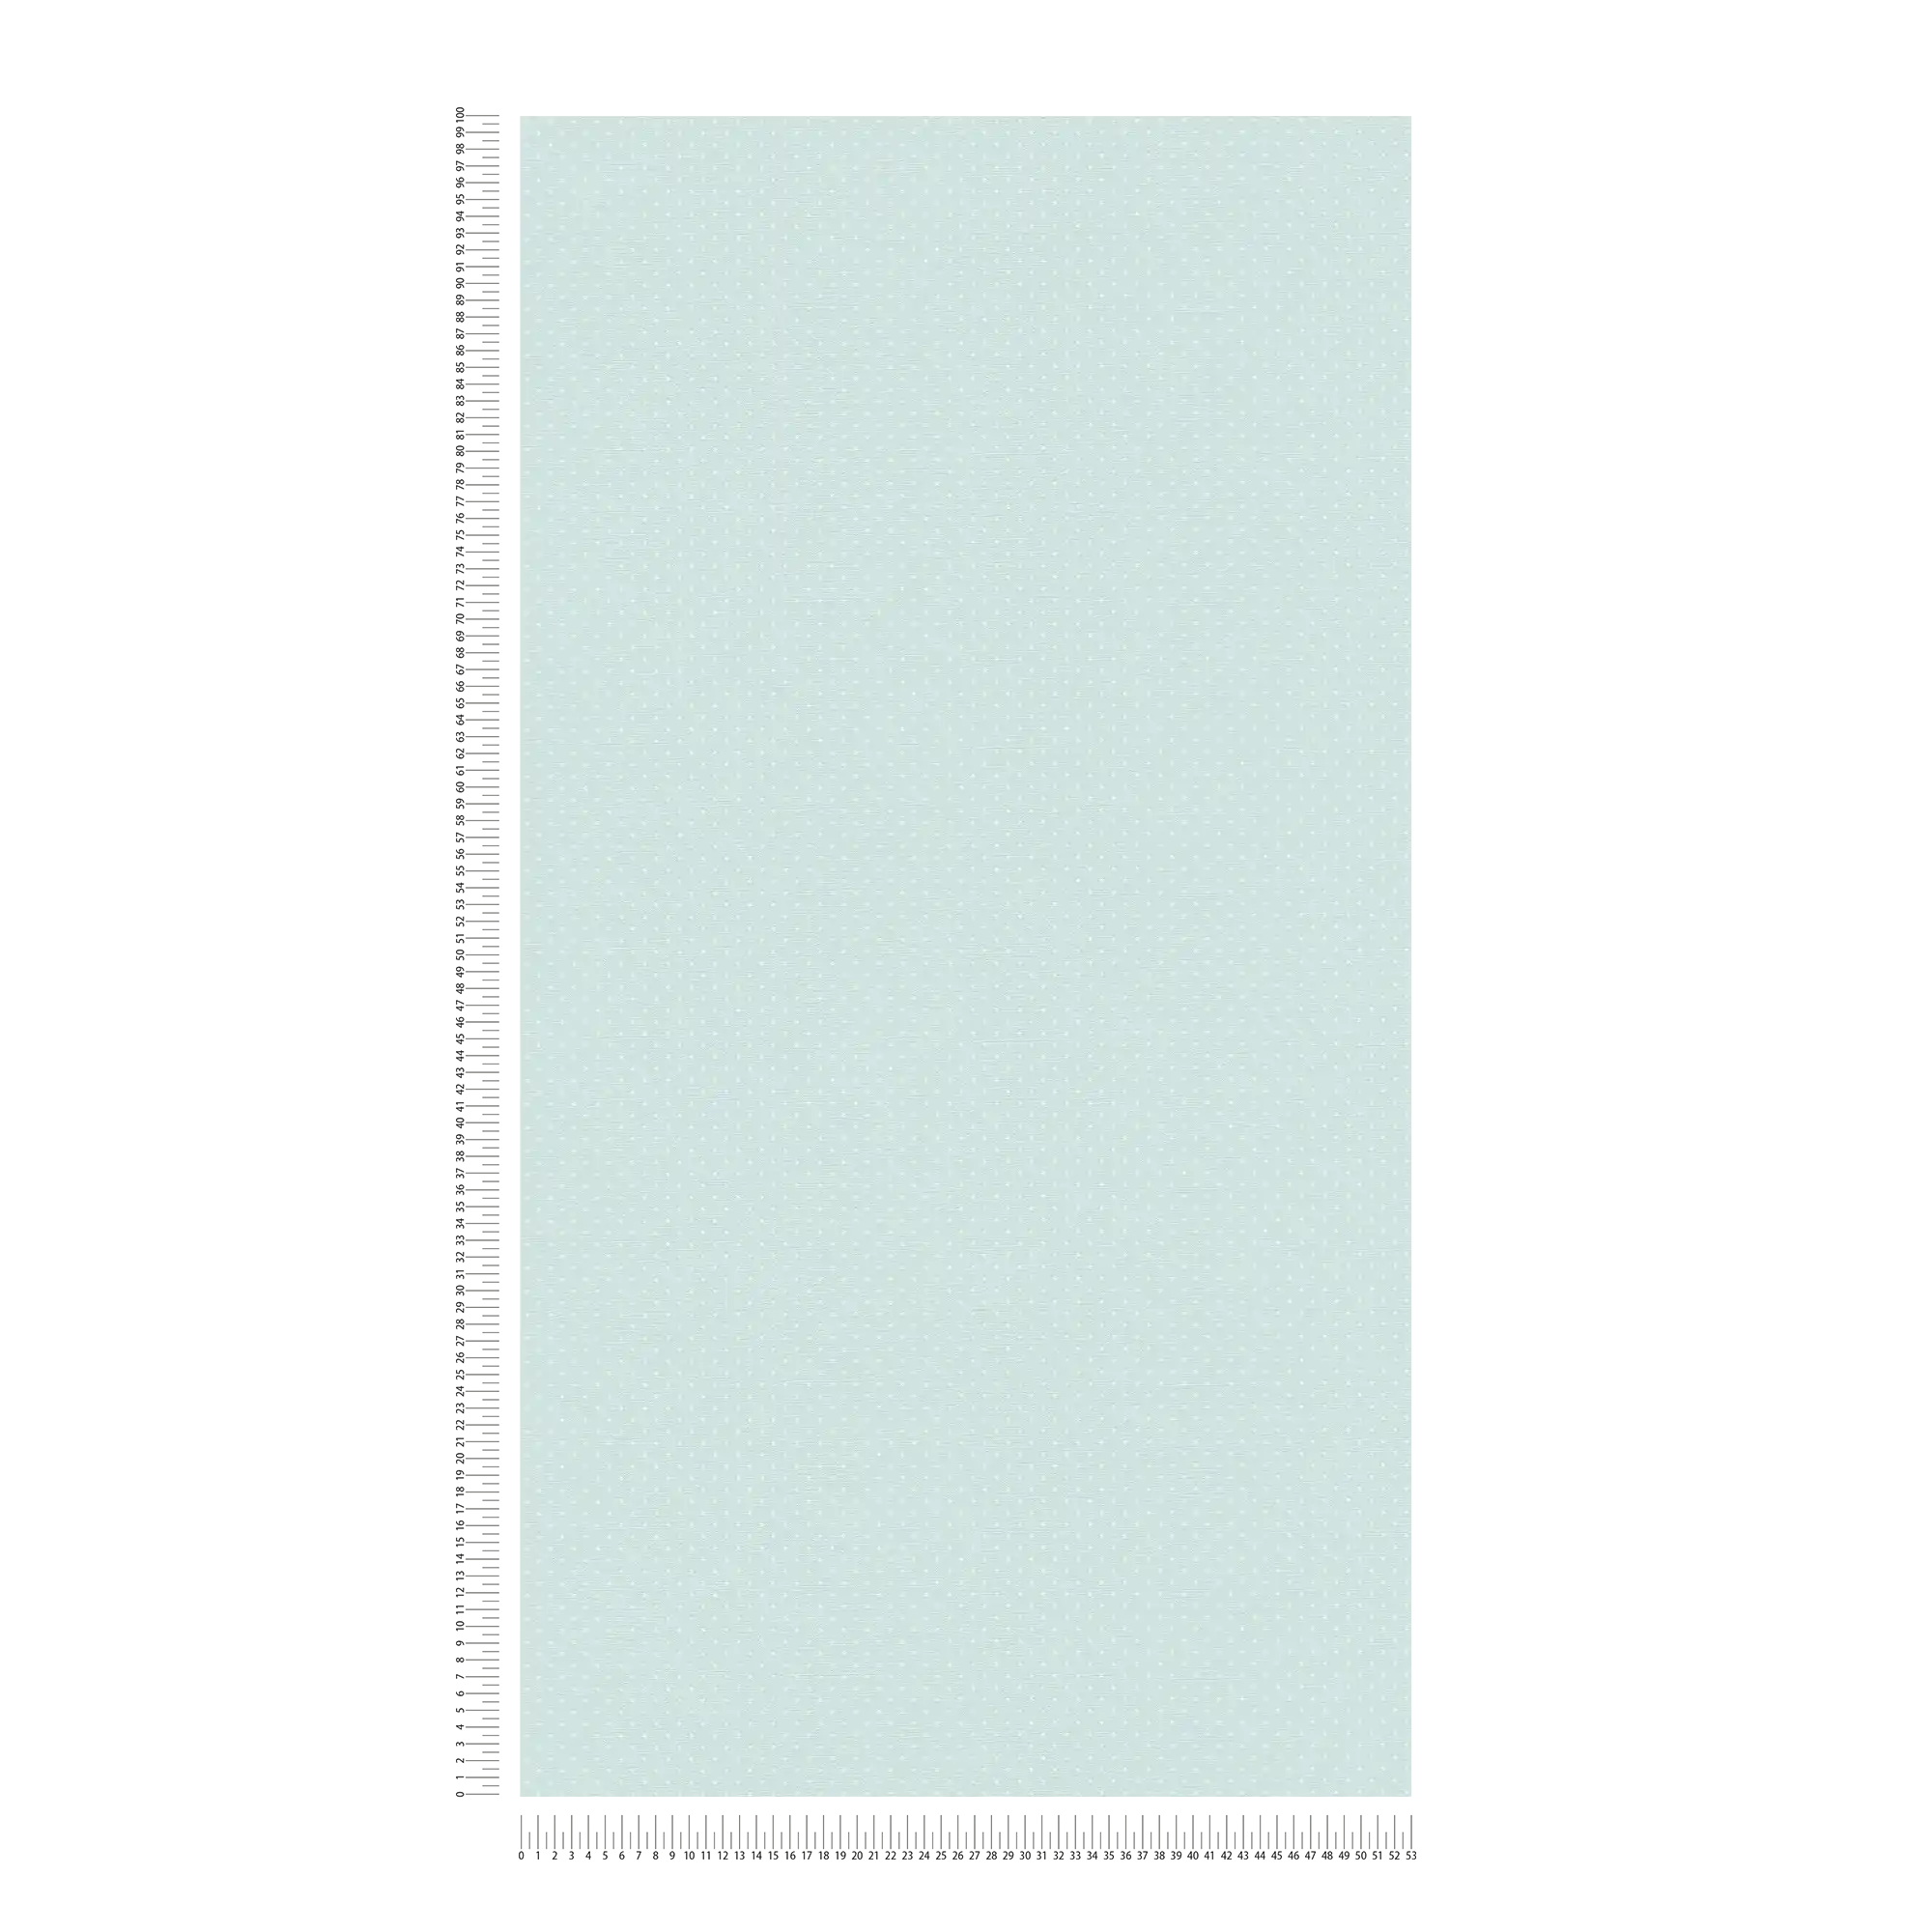             Carta da parati in tessuto non tessuto con motivo a piccoli punti - azzurro, bianco
        